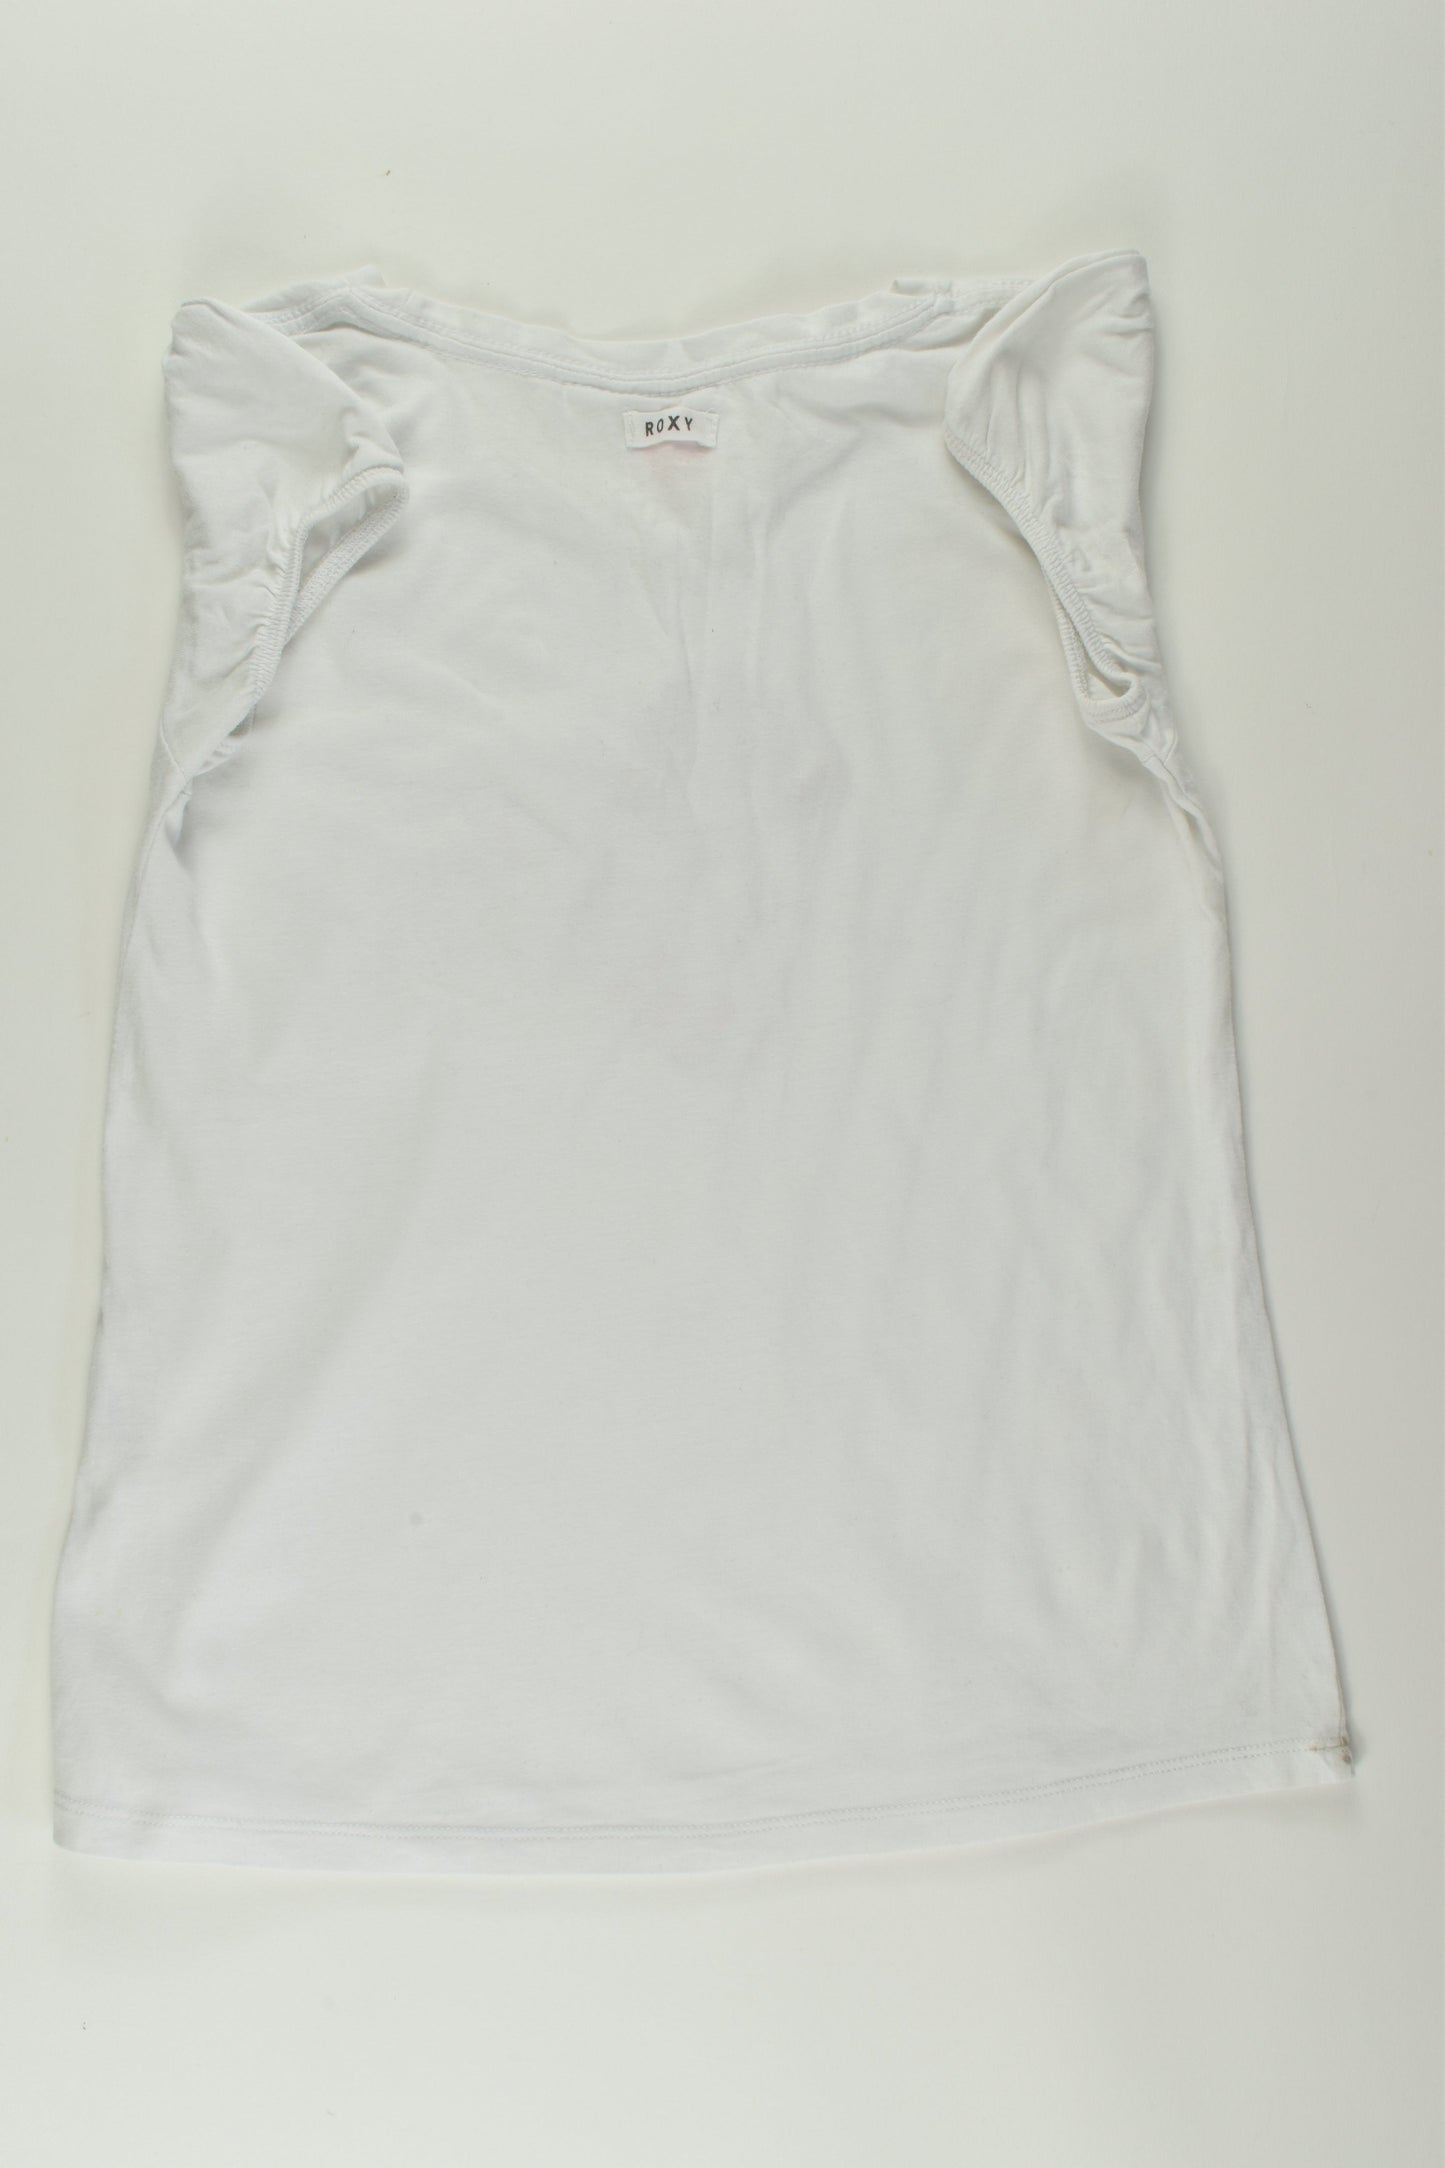 Roxy Size 6 T-shirt